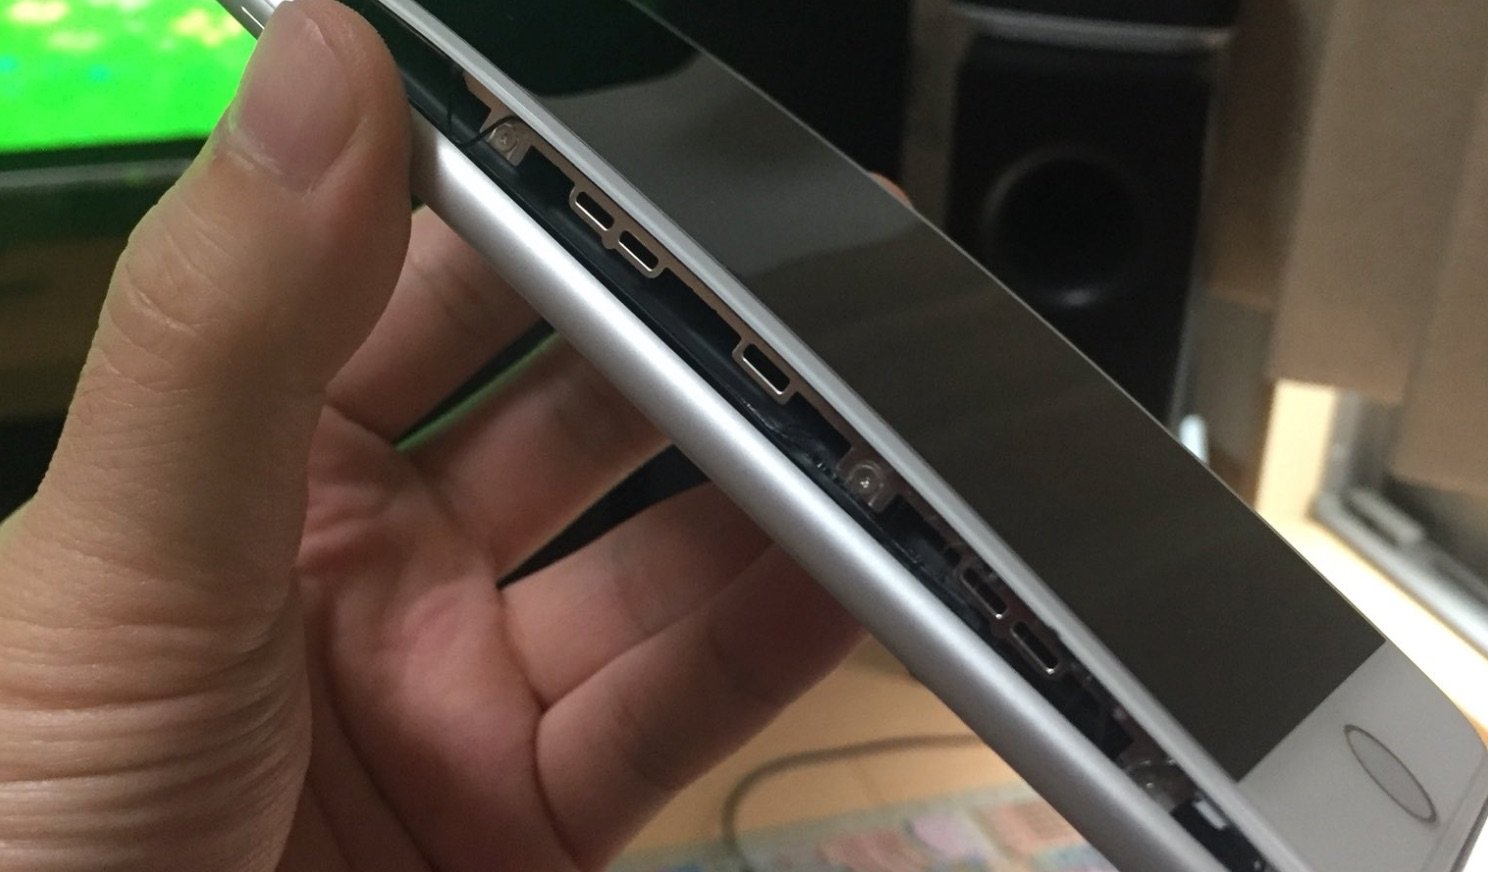 Apple iPhone 8 Plus: Mehr Meldungen über aufblähendes Display 6